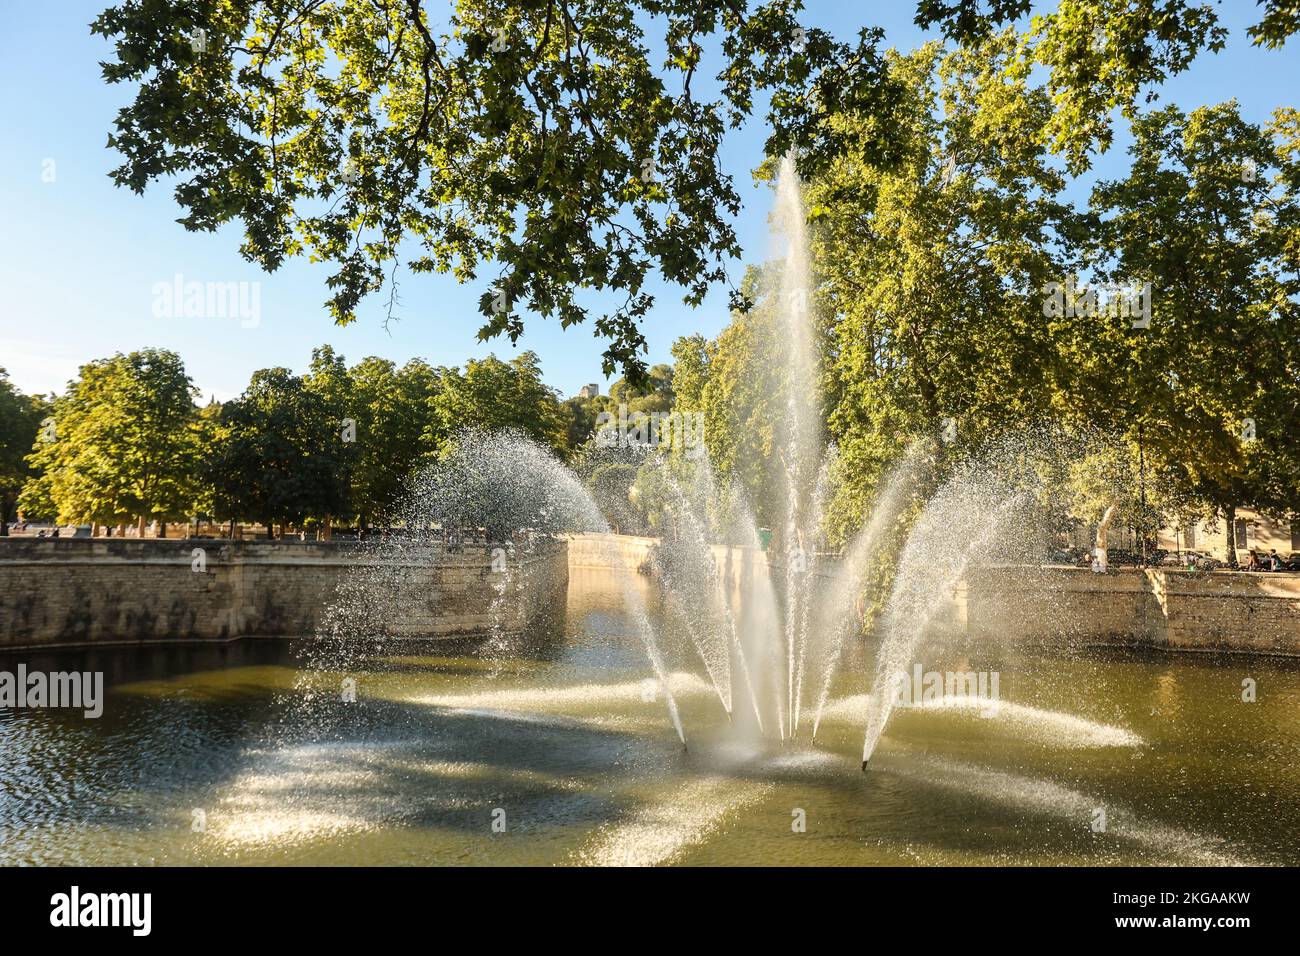 Fontaine de jardin London